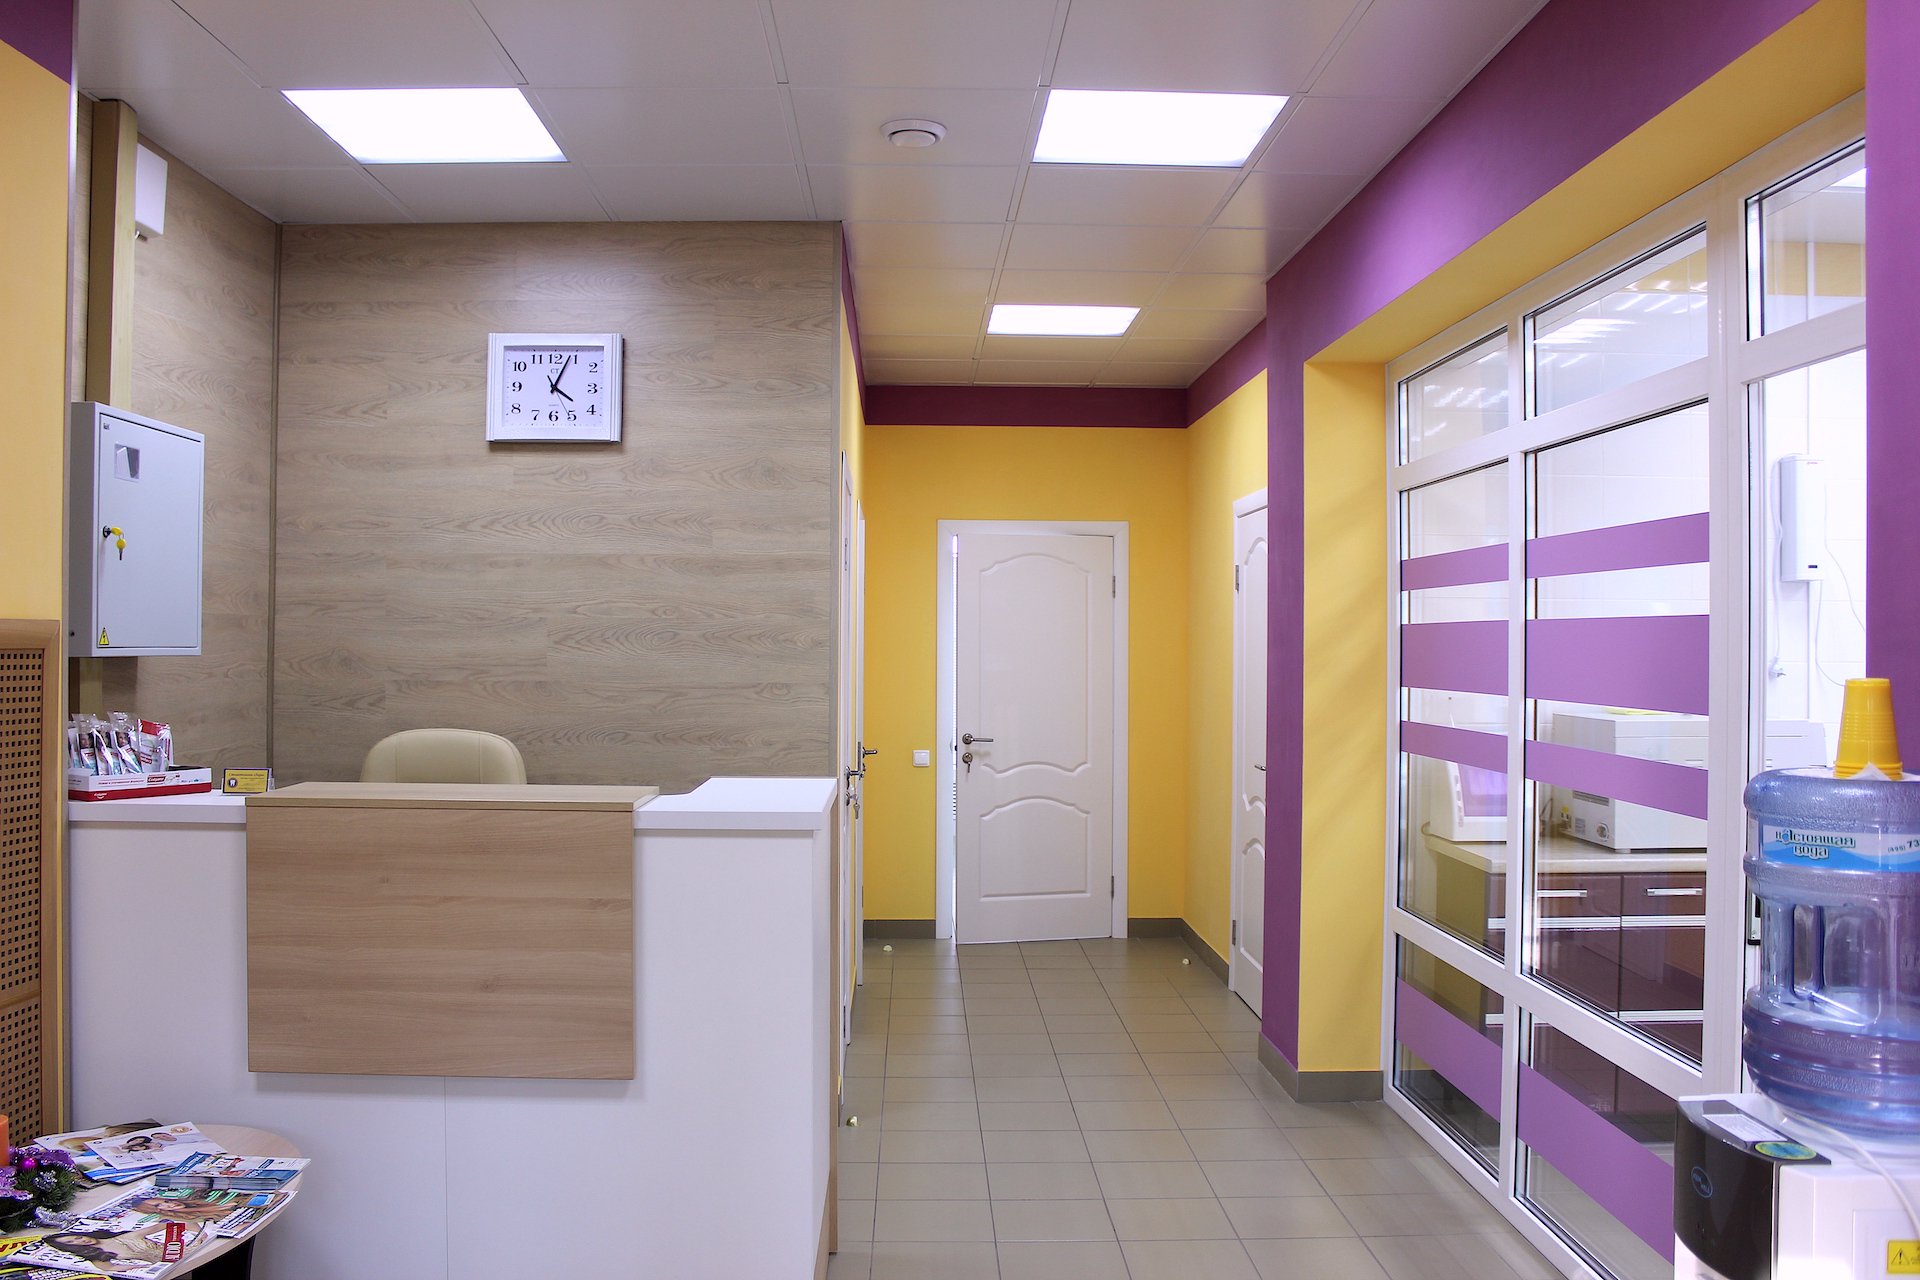 Лира, стоматологическая клиника, Варшавское шоссе, 141 к13, 1 этаж